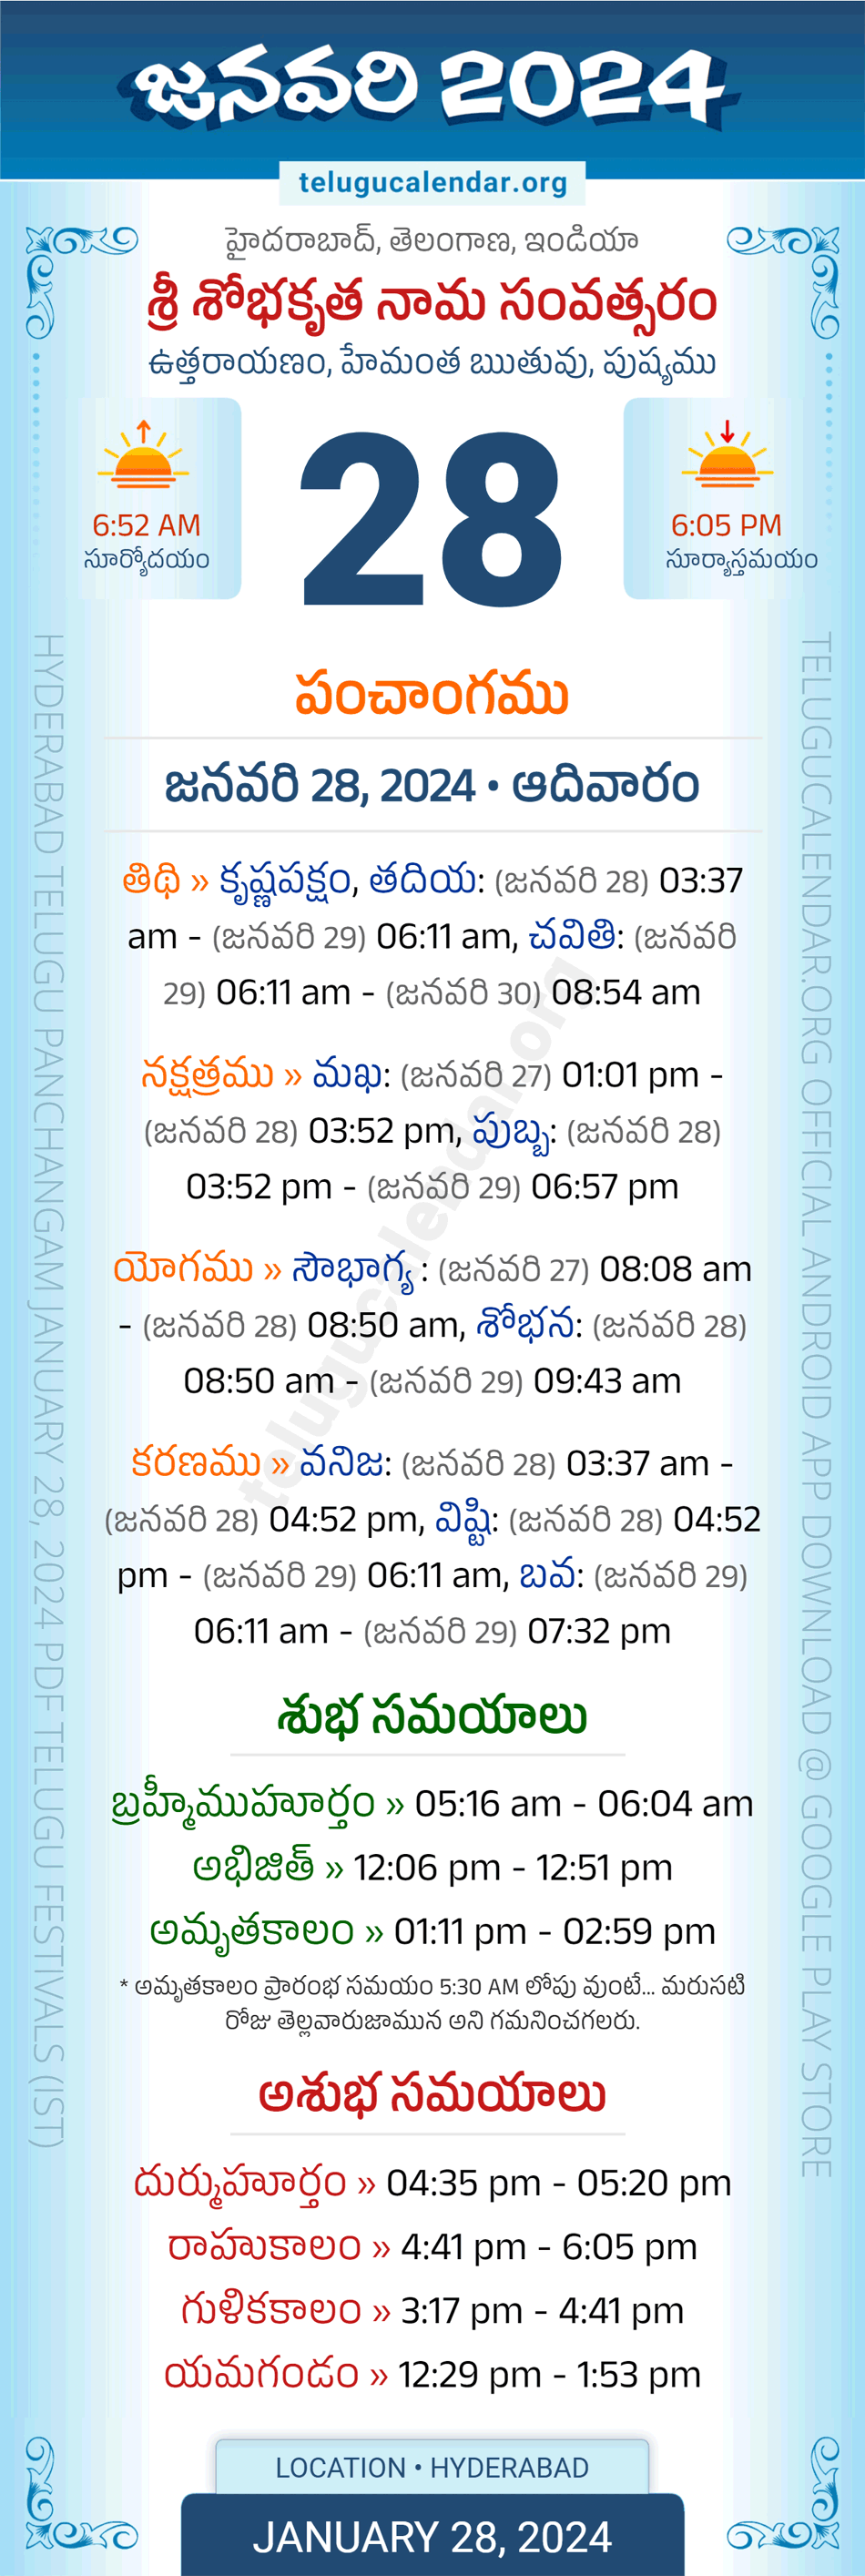 January 28, 2024 Telugu Calendar Panchangam Telangana